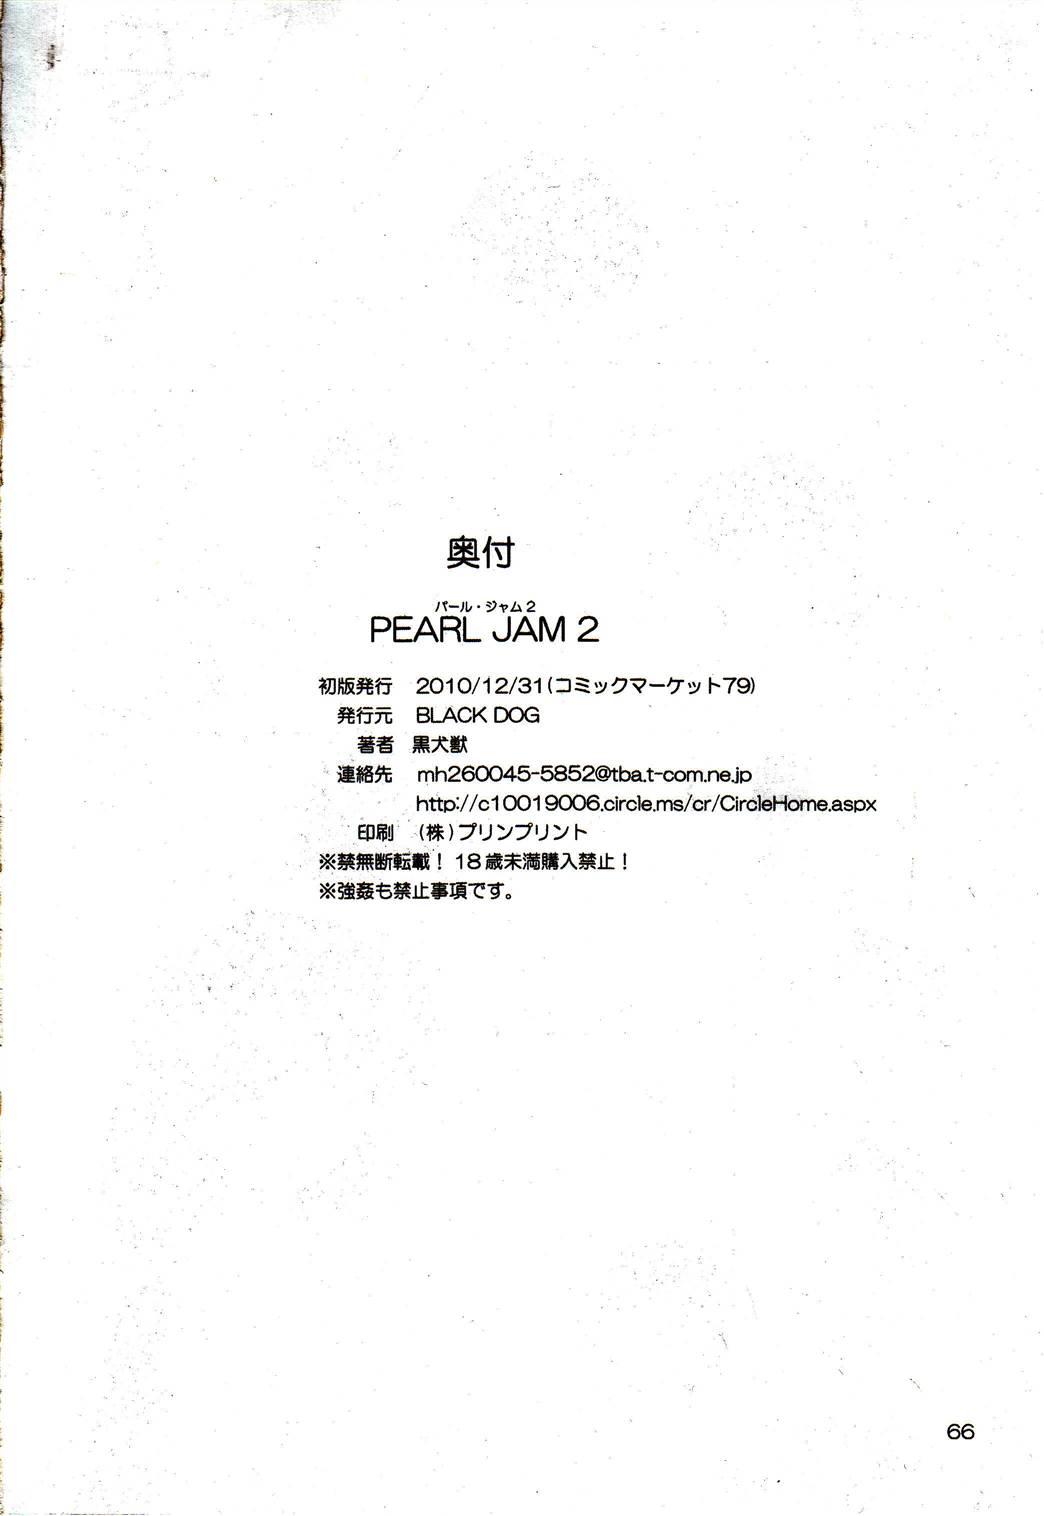 Pearl Jam 2 64